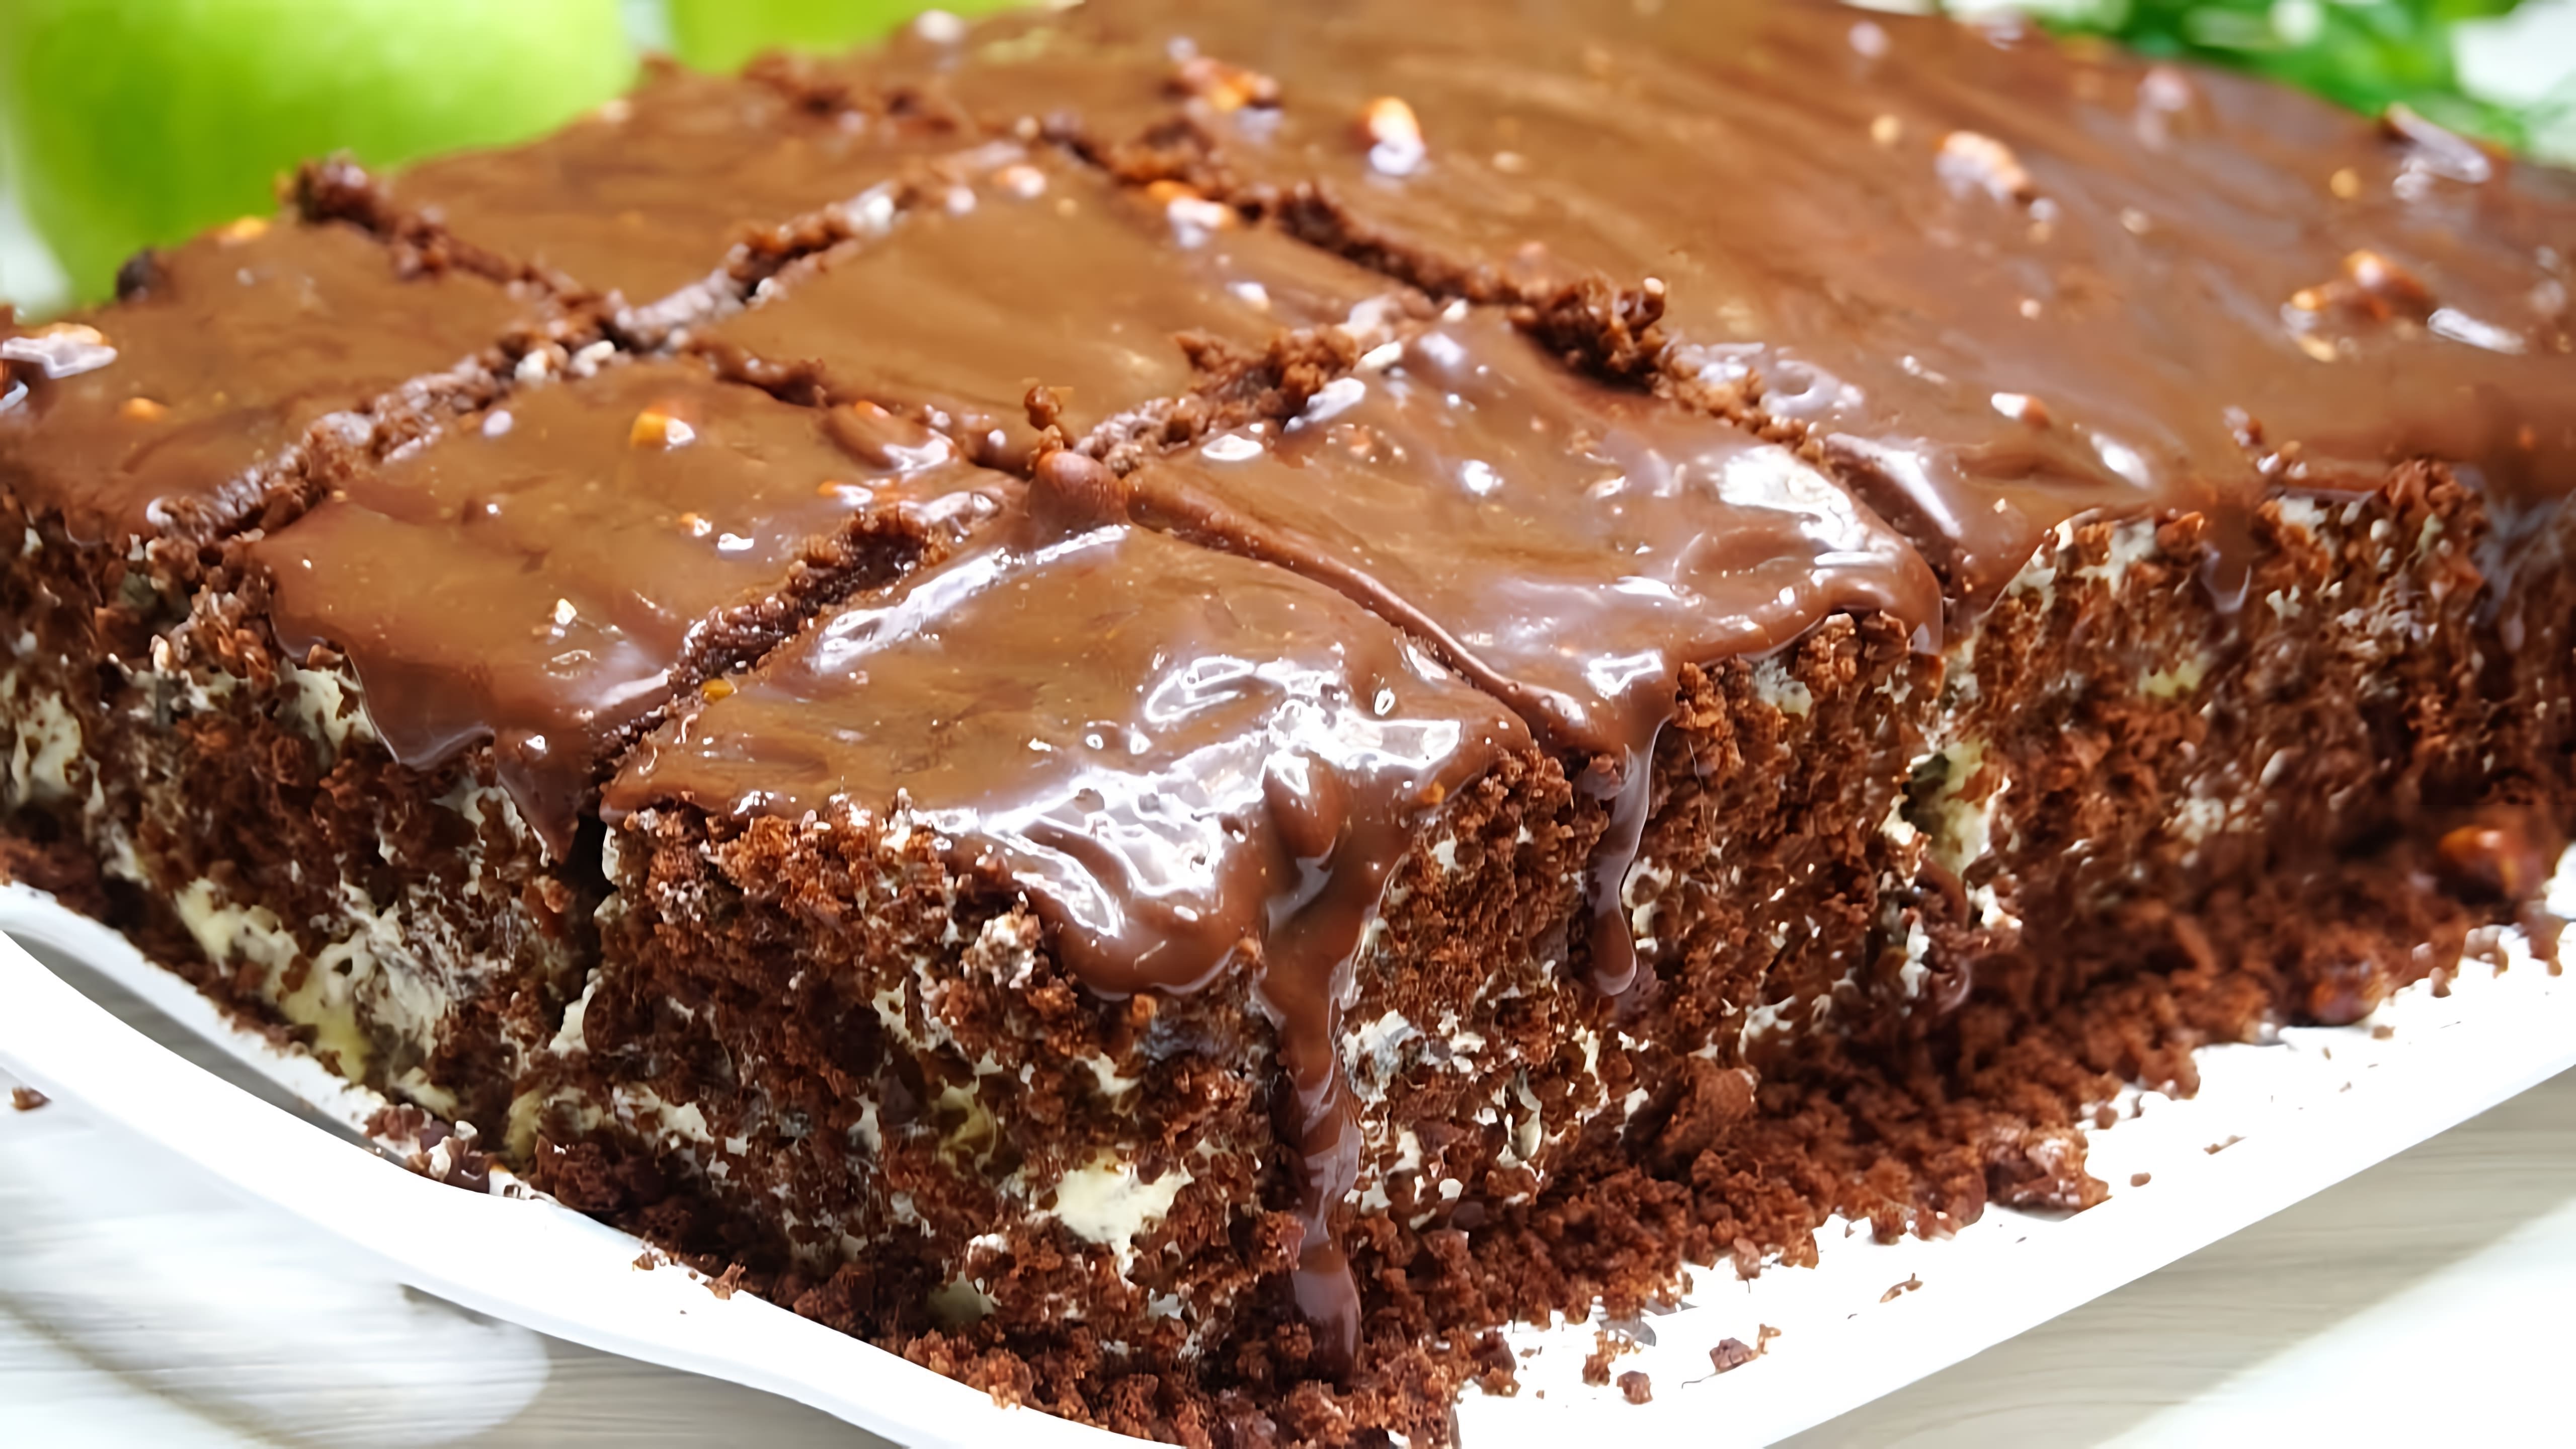 Видео как приготовить домашний шоколадный торт с масляным кремом, который не требует замачивания